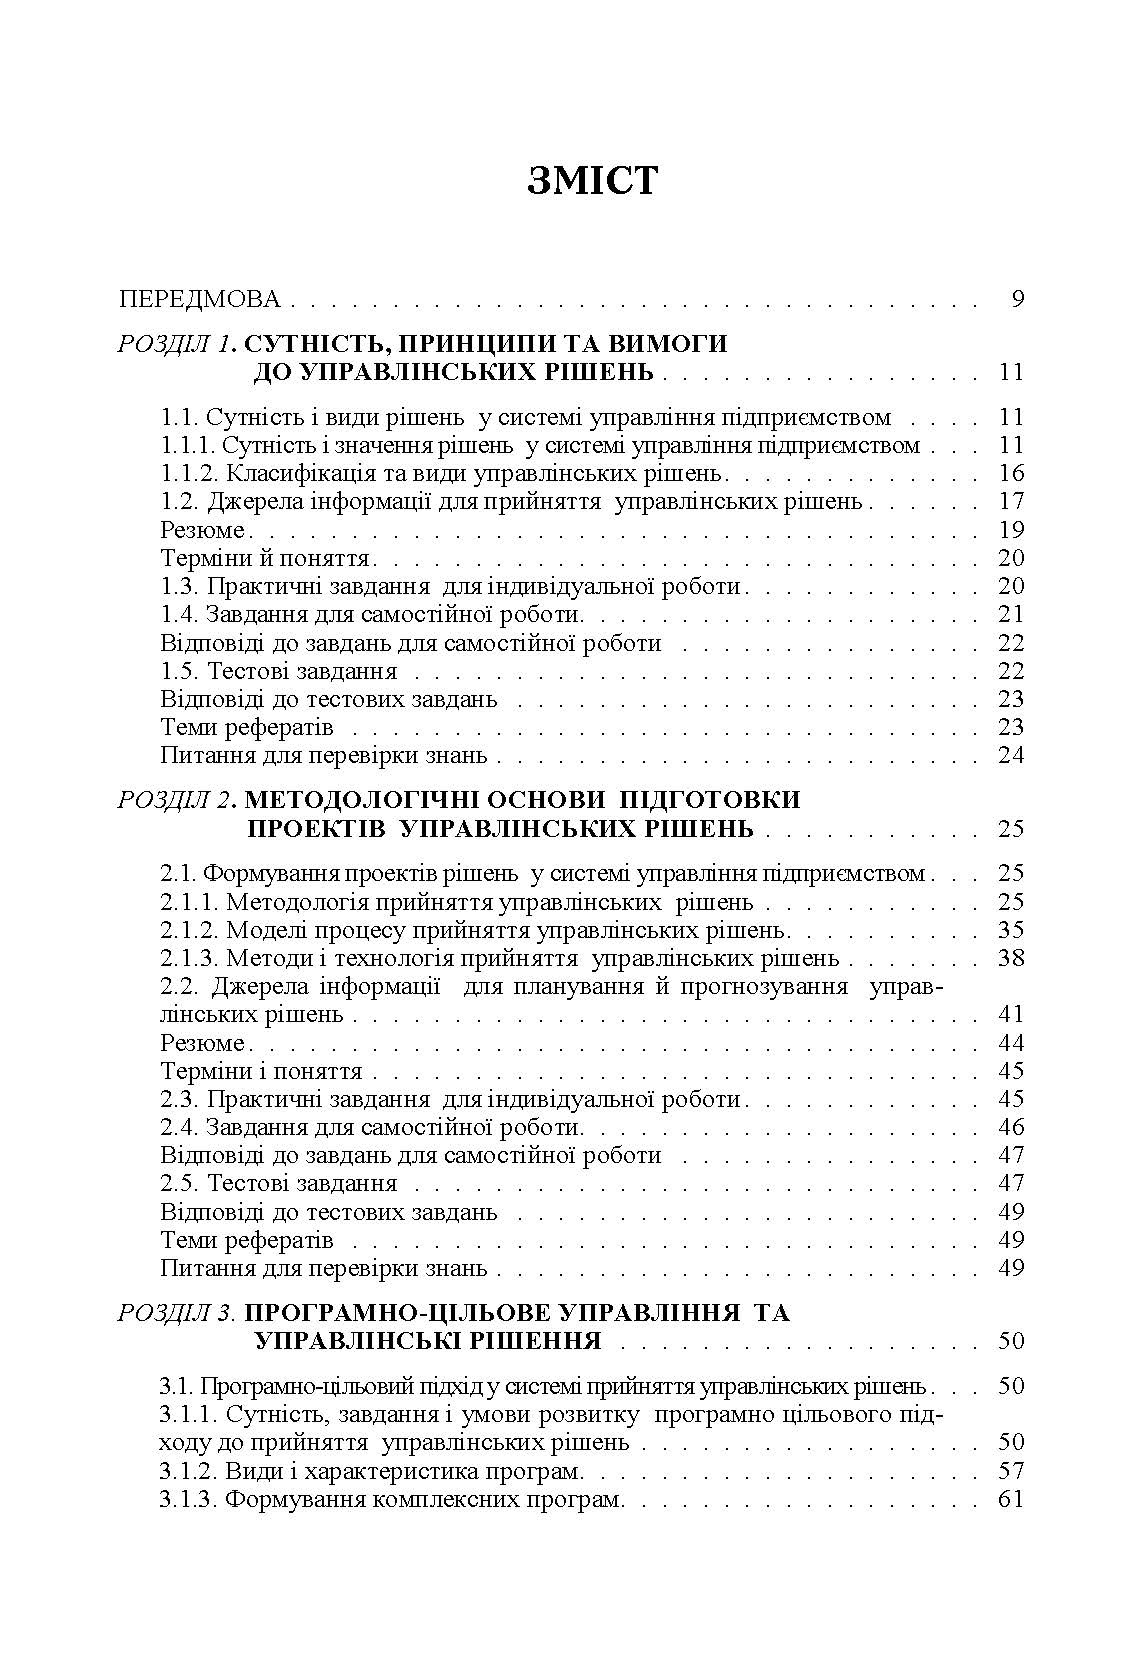 Моделі і методи прийняття рішень в аналізі та аудиті (2019 год)). Автор — Сметанко О.В.. 